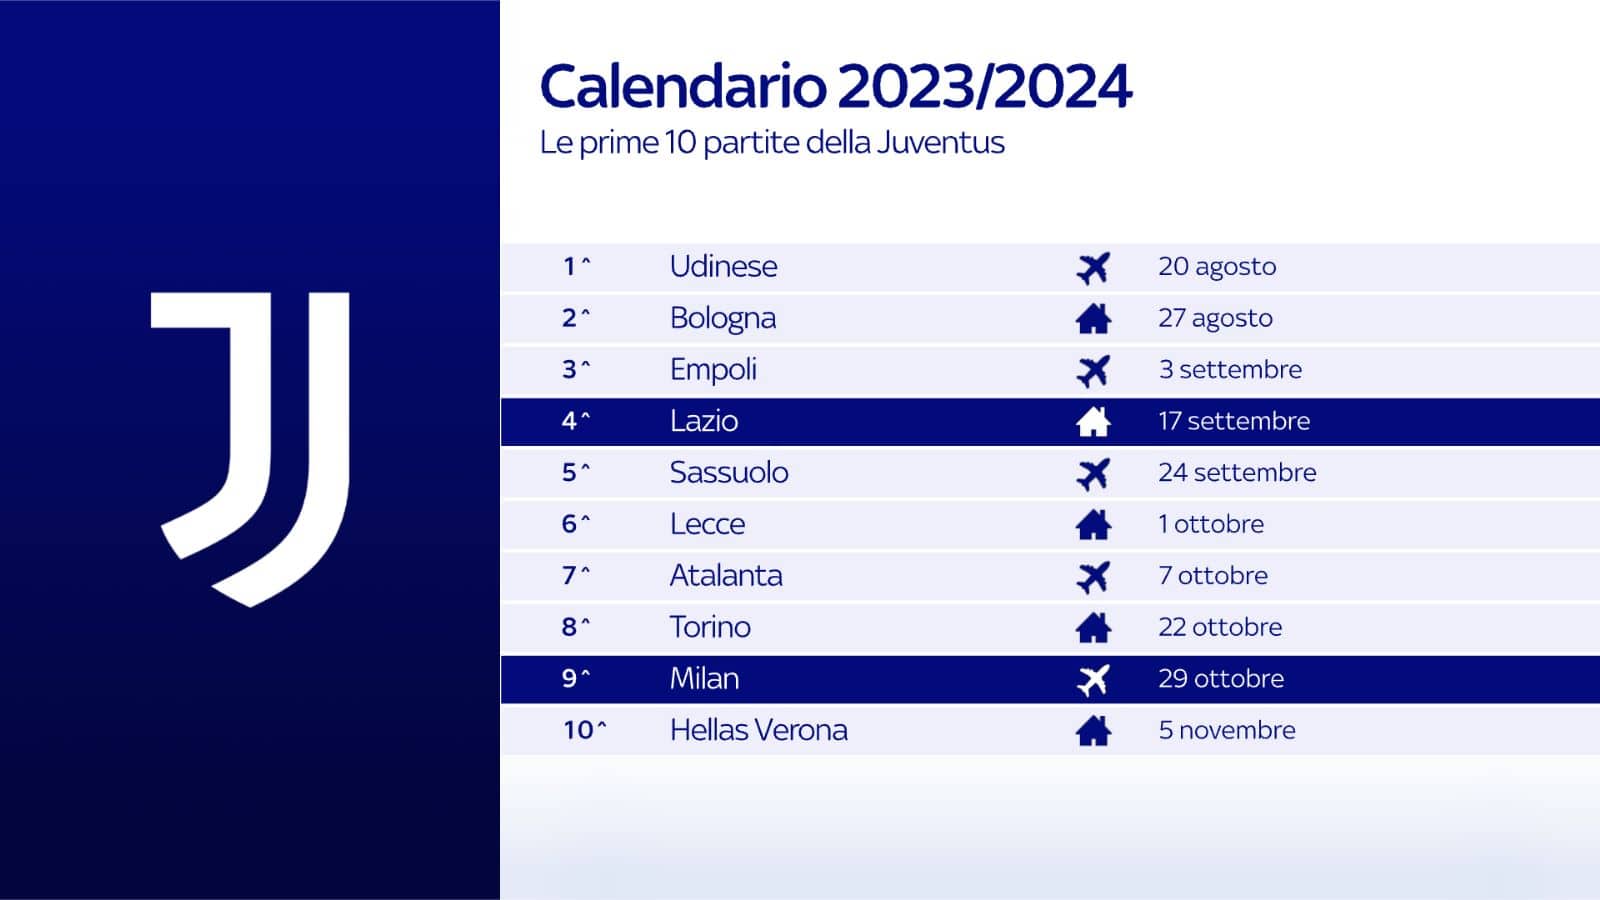 Calendario Juve in Serie A: le partite del campionato 2023 2024